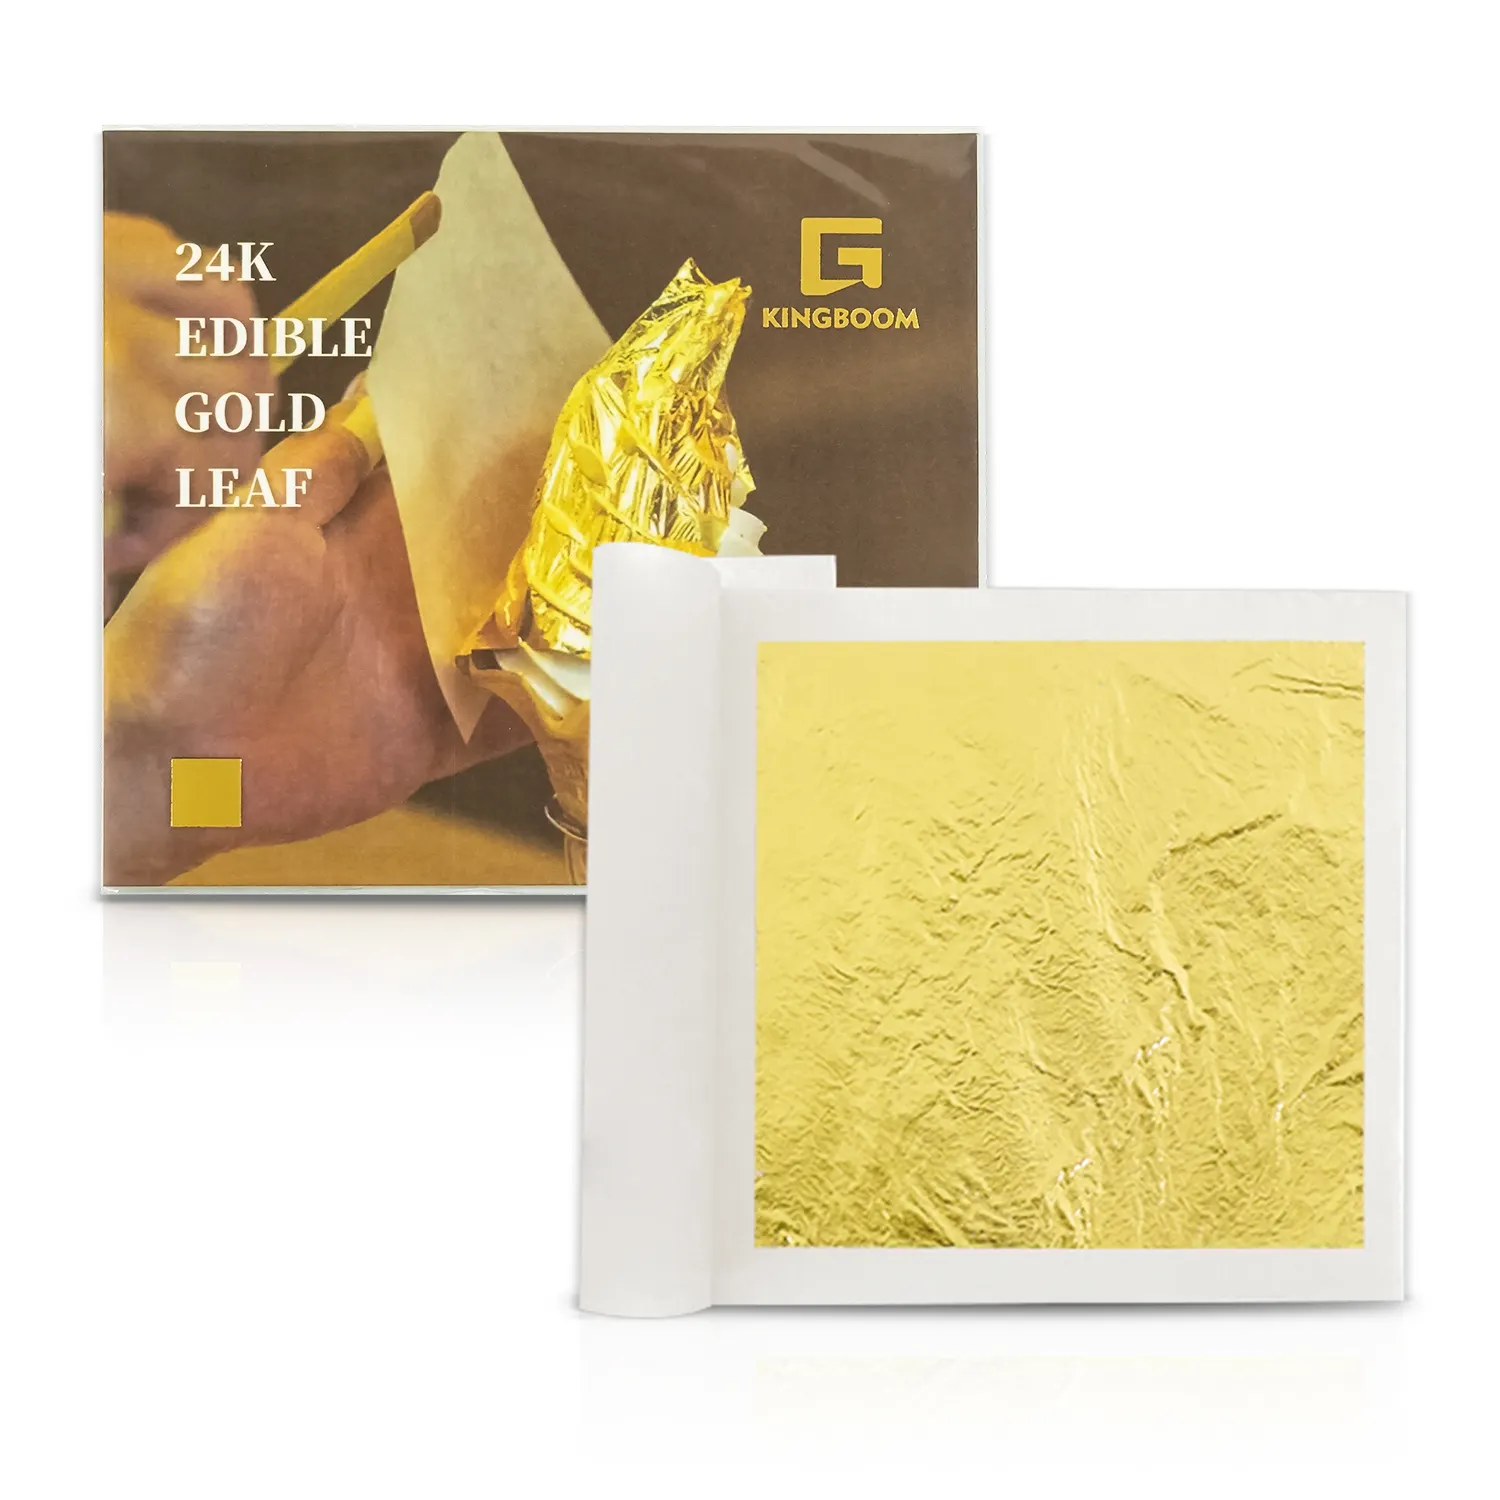 8*8cm Genuine 24K Edible Transfer Gold Leaf For Decoration